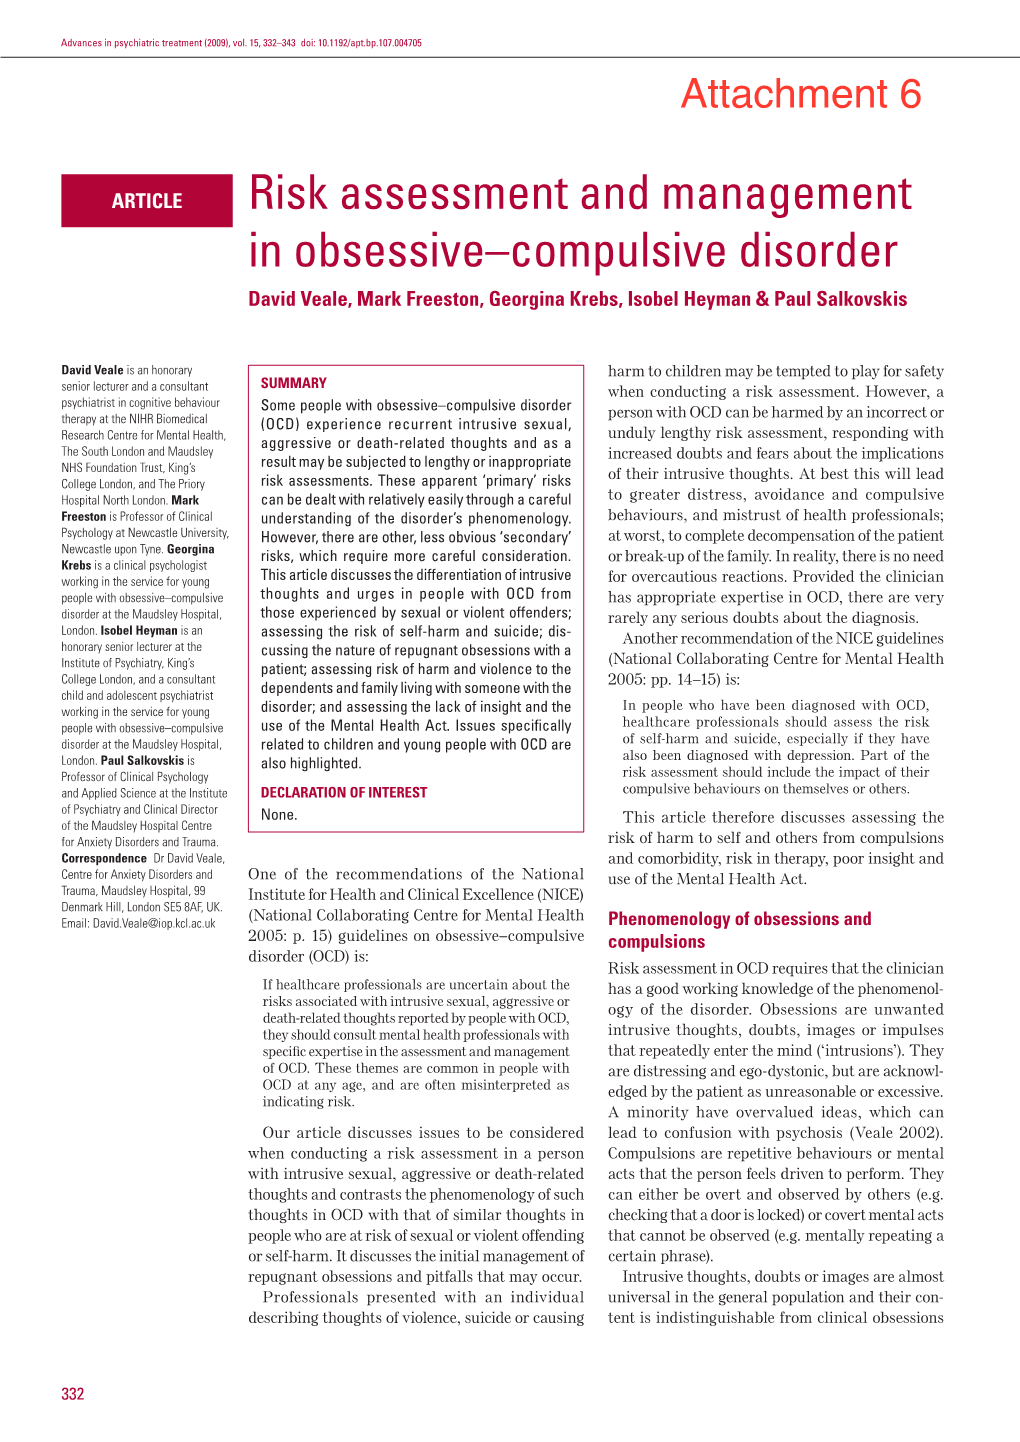 Risk Assessment and Management in Obsessive–Compulsive Disorder David Veale, Mark Freeston, Georgina Krebs, Isobel Heyman & Paul Salkovskis